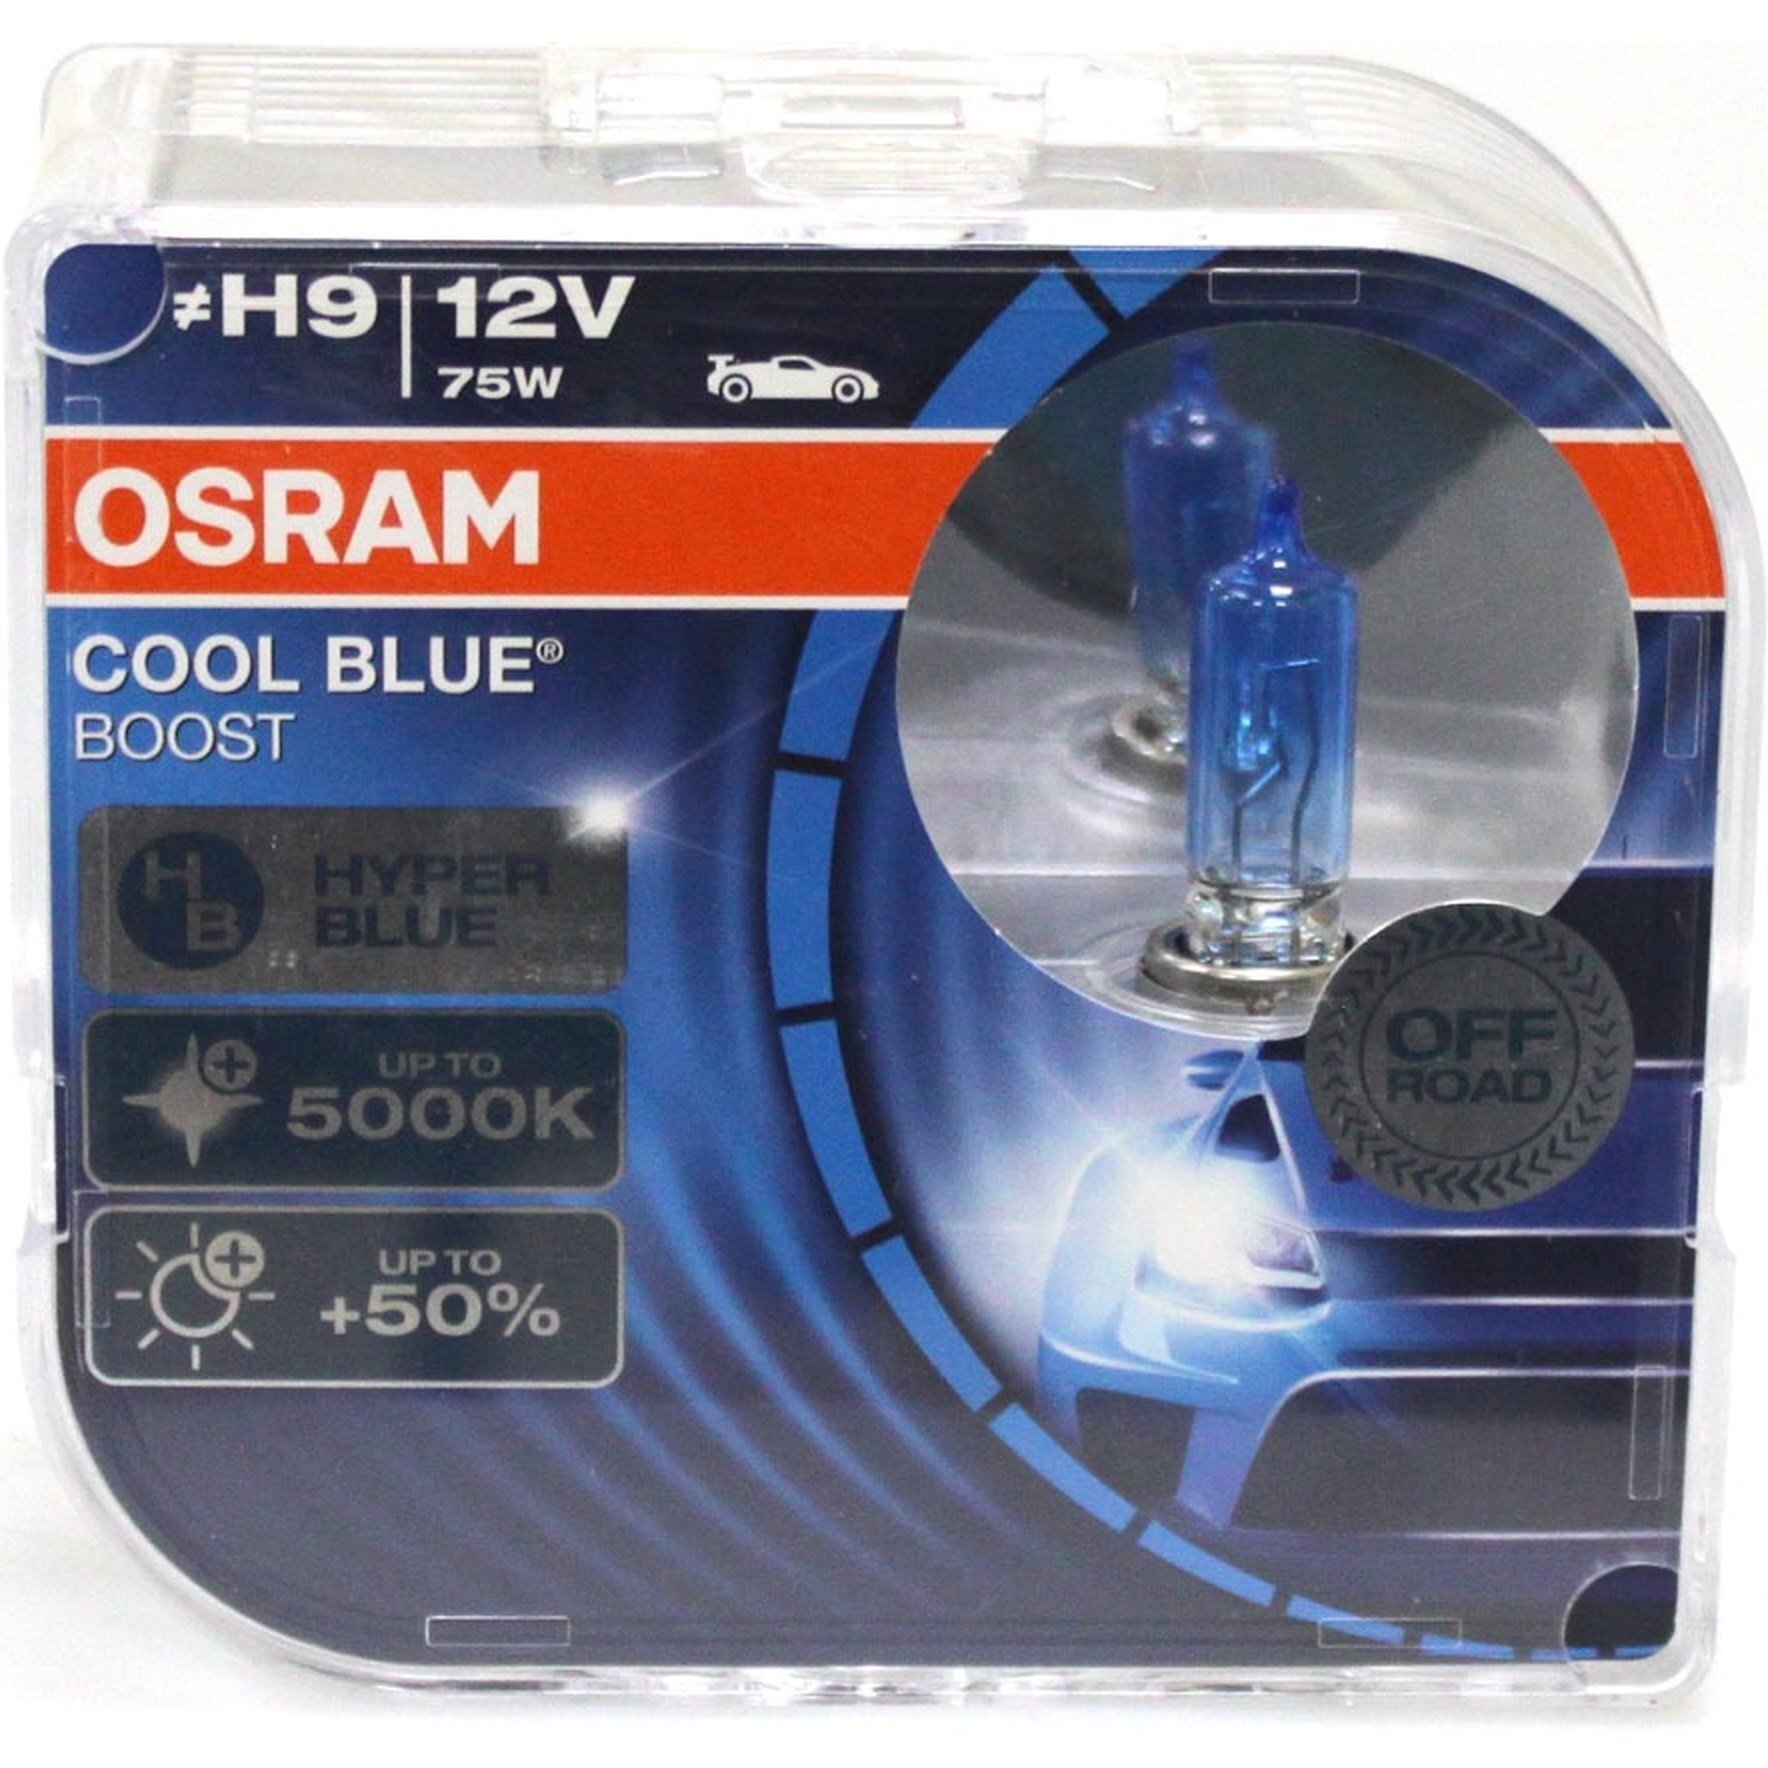 Лампа Osram галогеновая 12V H9 75W Pgj19-5 Cool Blue Boost +50%, Duobox (2шт) (OS_62213_CBB-HCB) фото 1